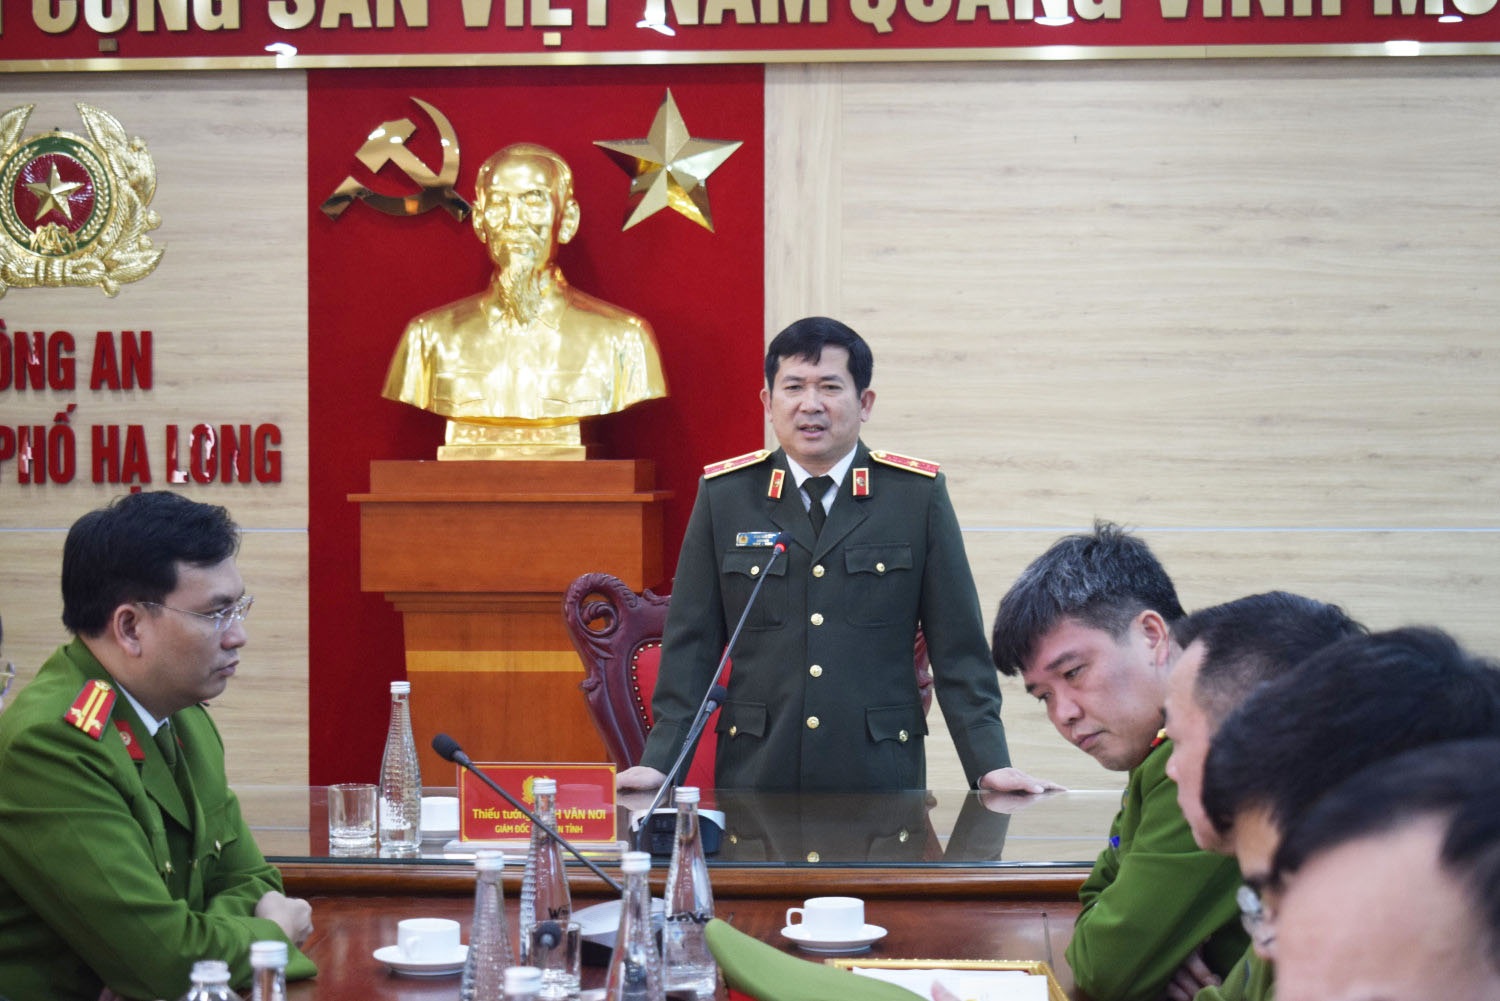 Thiếu tướng Đinh Văn Nơi thưởng nóng cho tập thể điều tra, phá án nhanh - 1